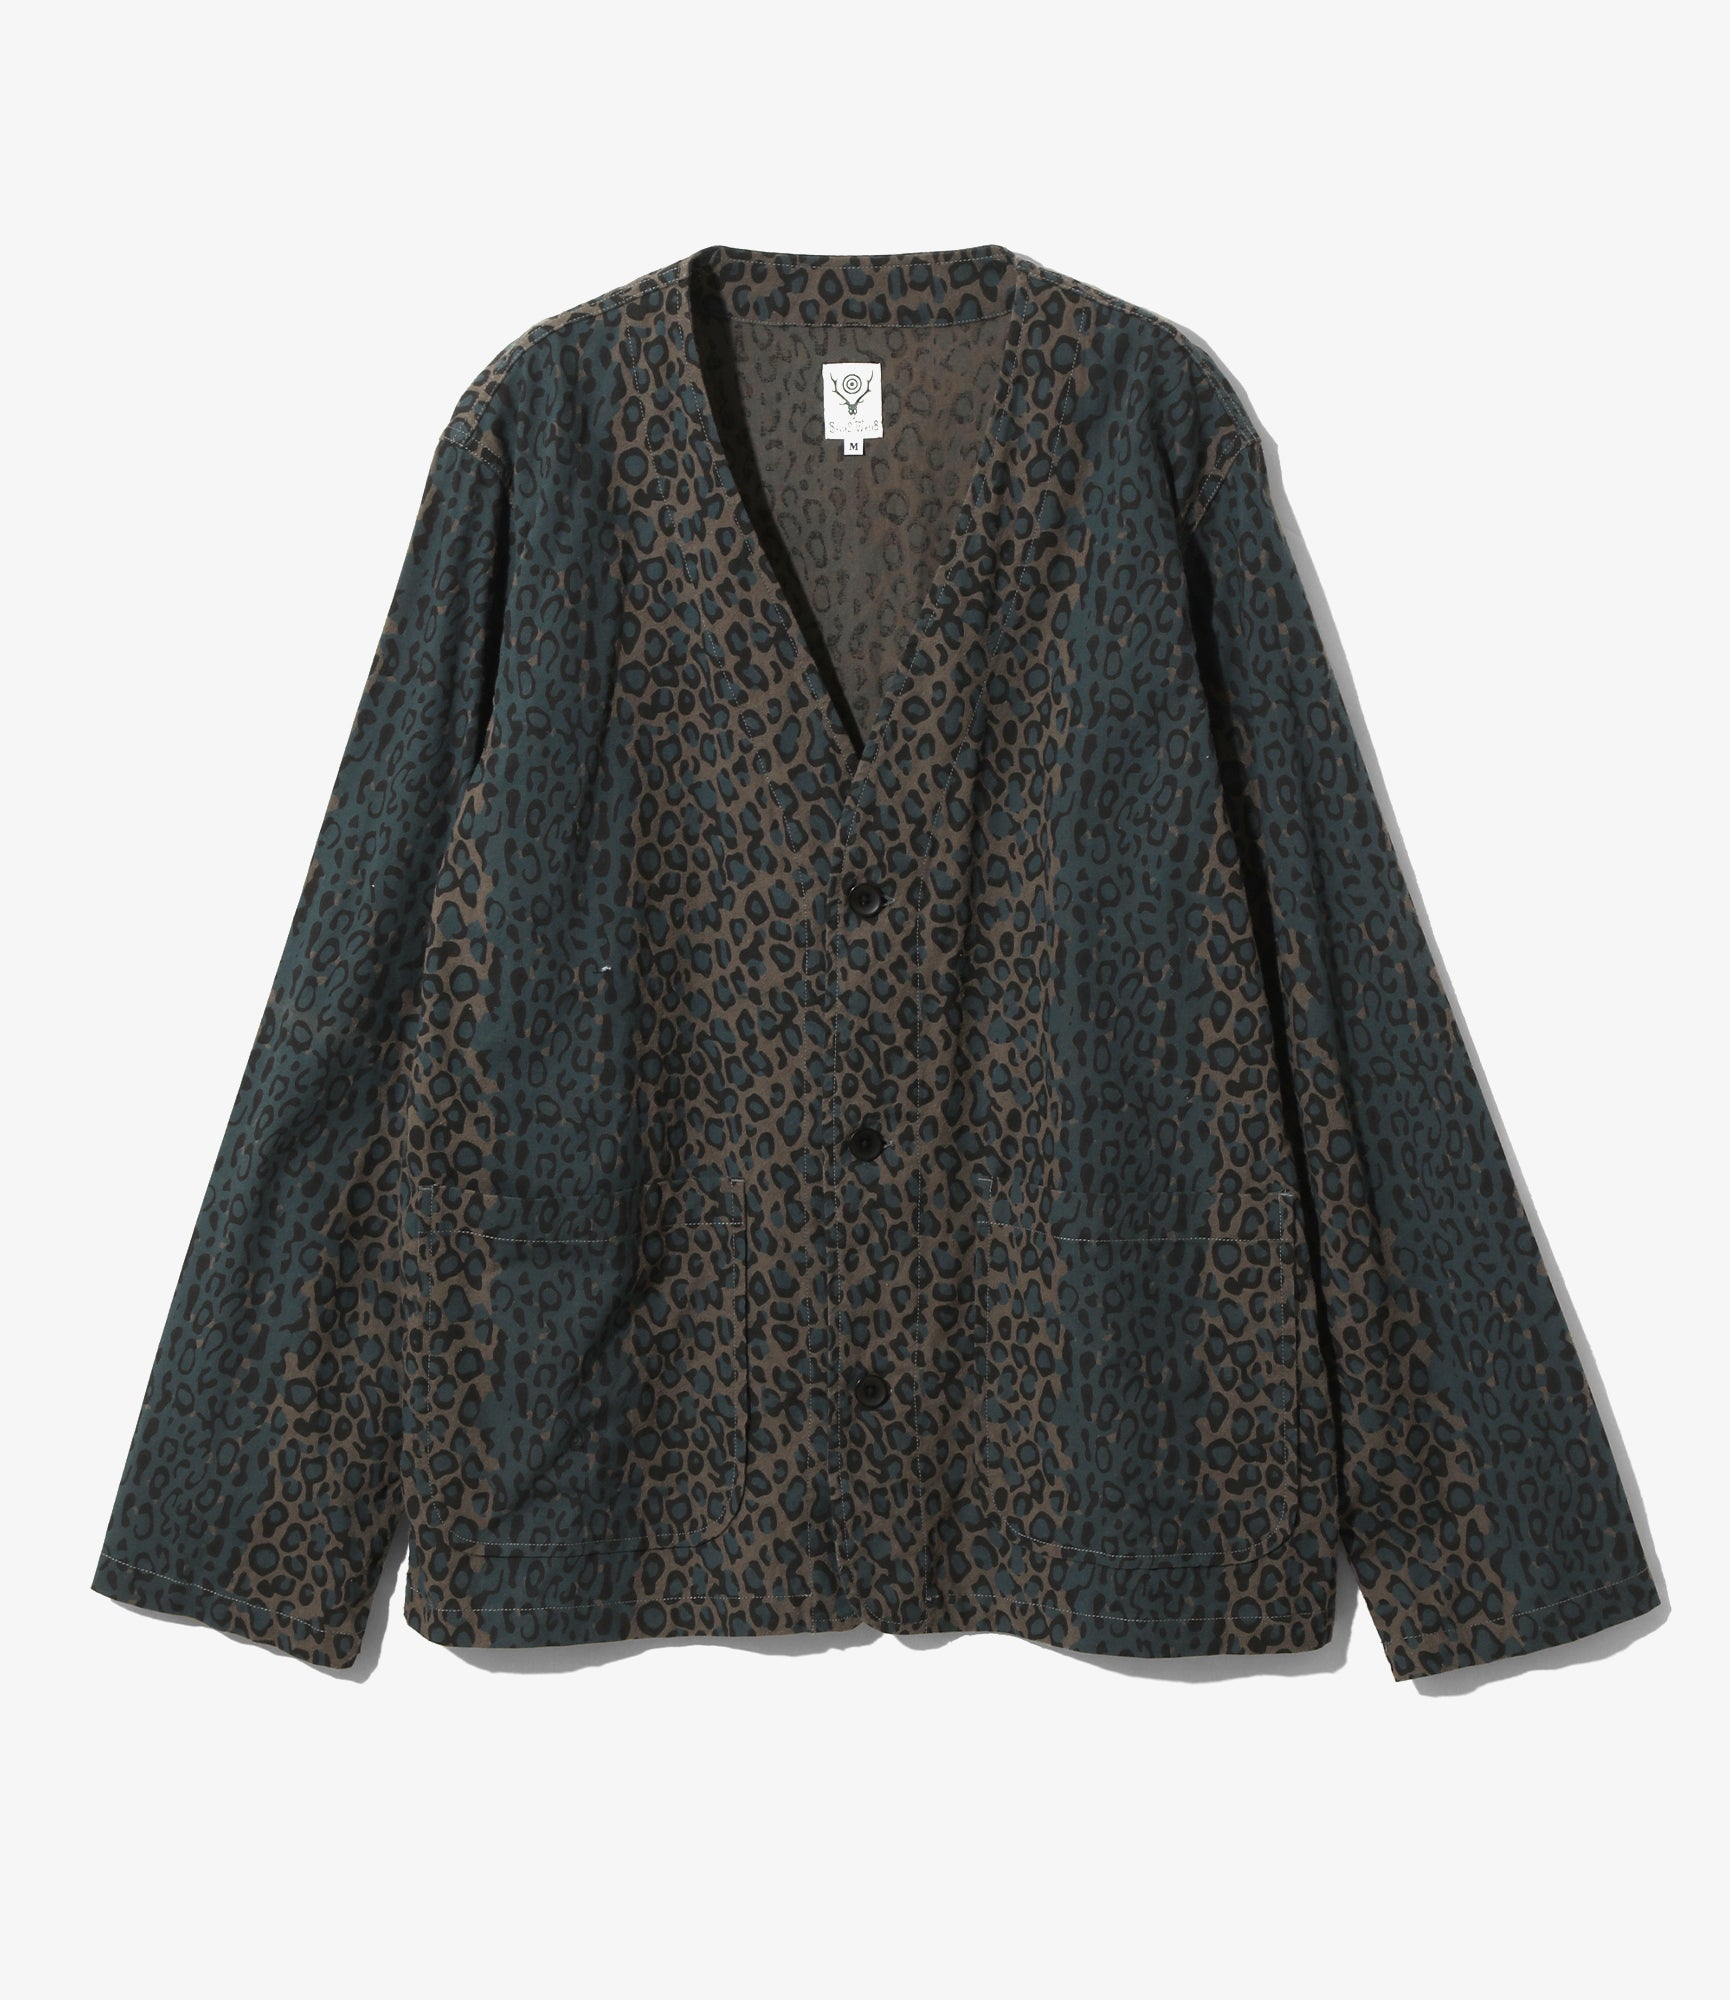 V Neck Jacket - Leopard - Flannel Cloth / Printed